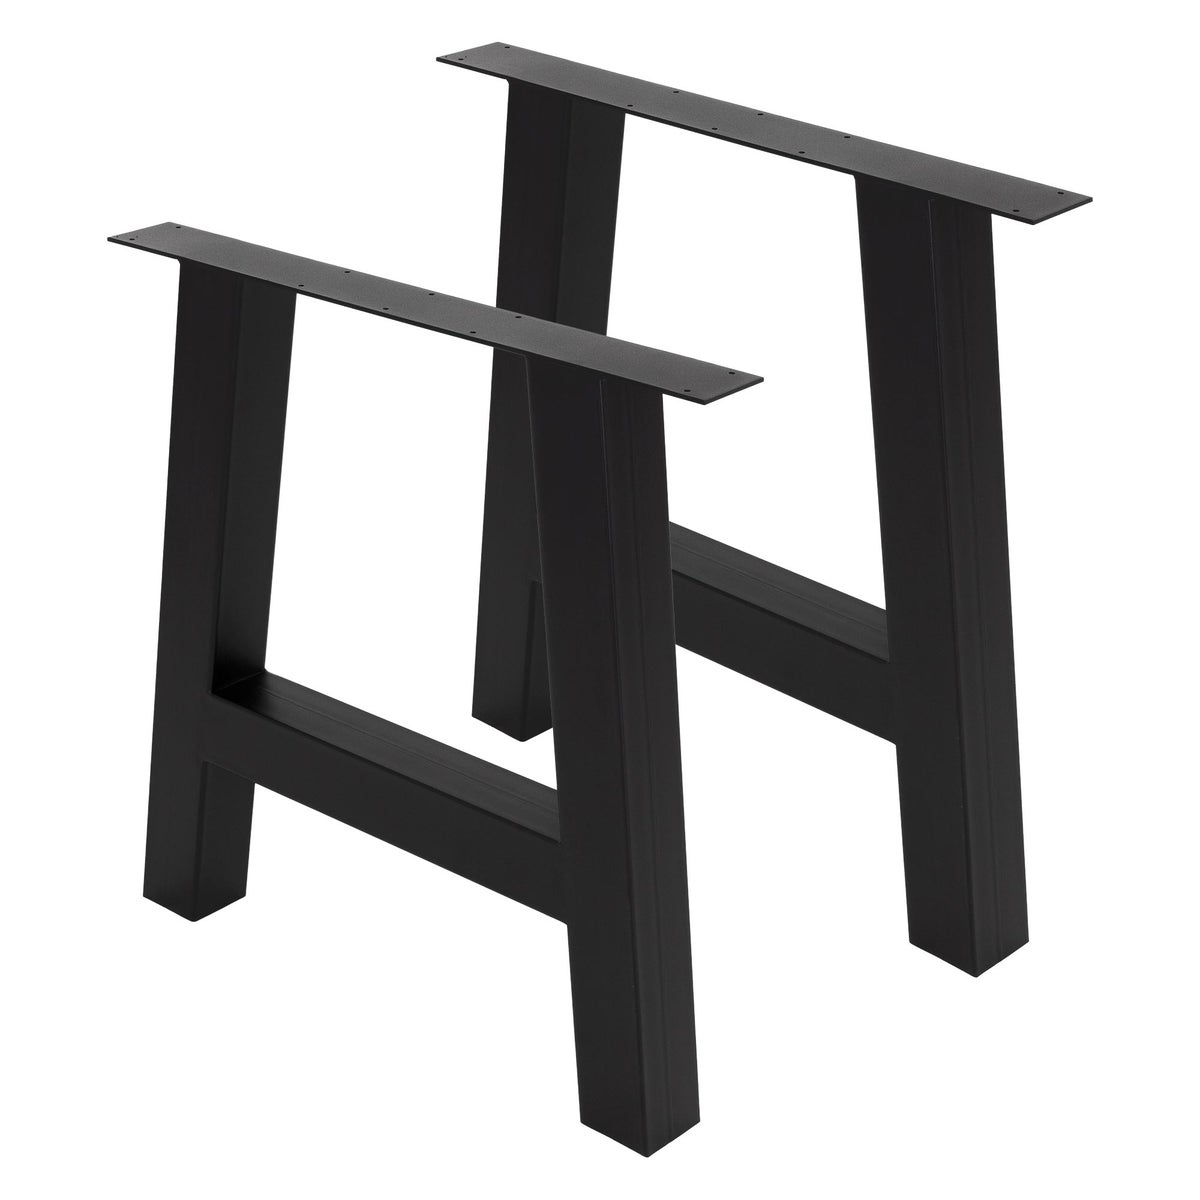 ML-Design 2er Set Tischbeine A-Form 70x72 cm, Schwarz, Profil 8x8cm, pulverbeschichteter Stahl, Industriedesign, Metall Tischkufen Tischgestell Tischuntergestell Möbelfüße, für Esstisch Schreibtisch